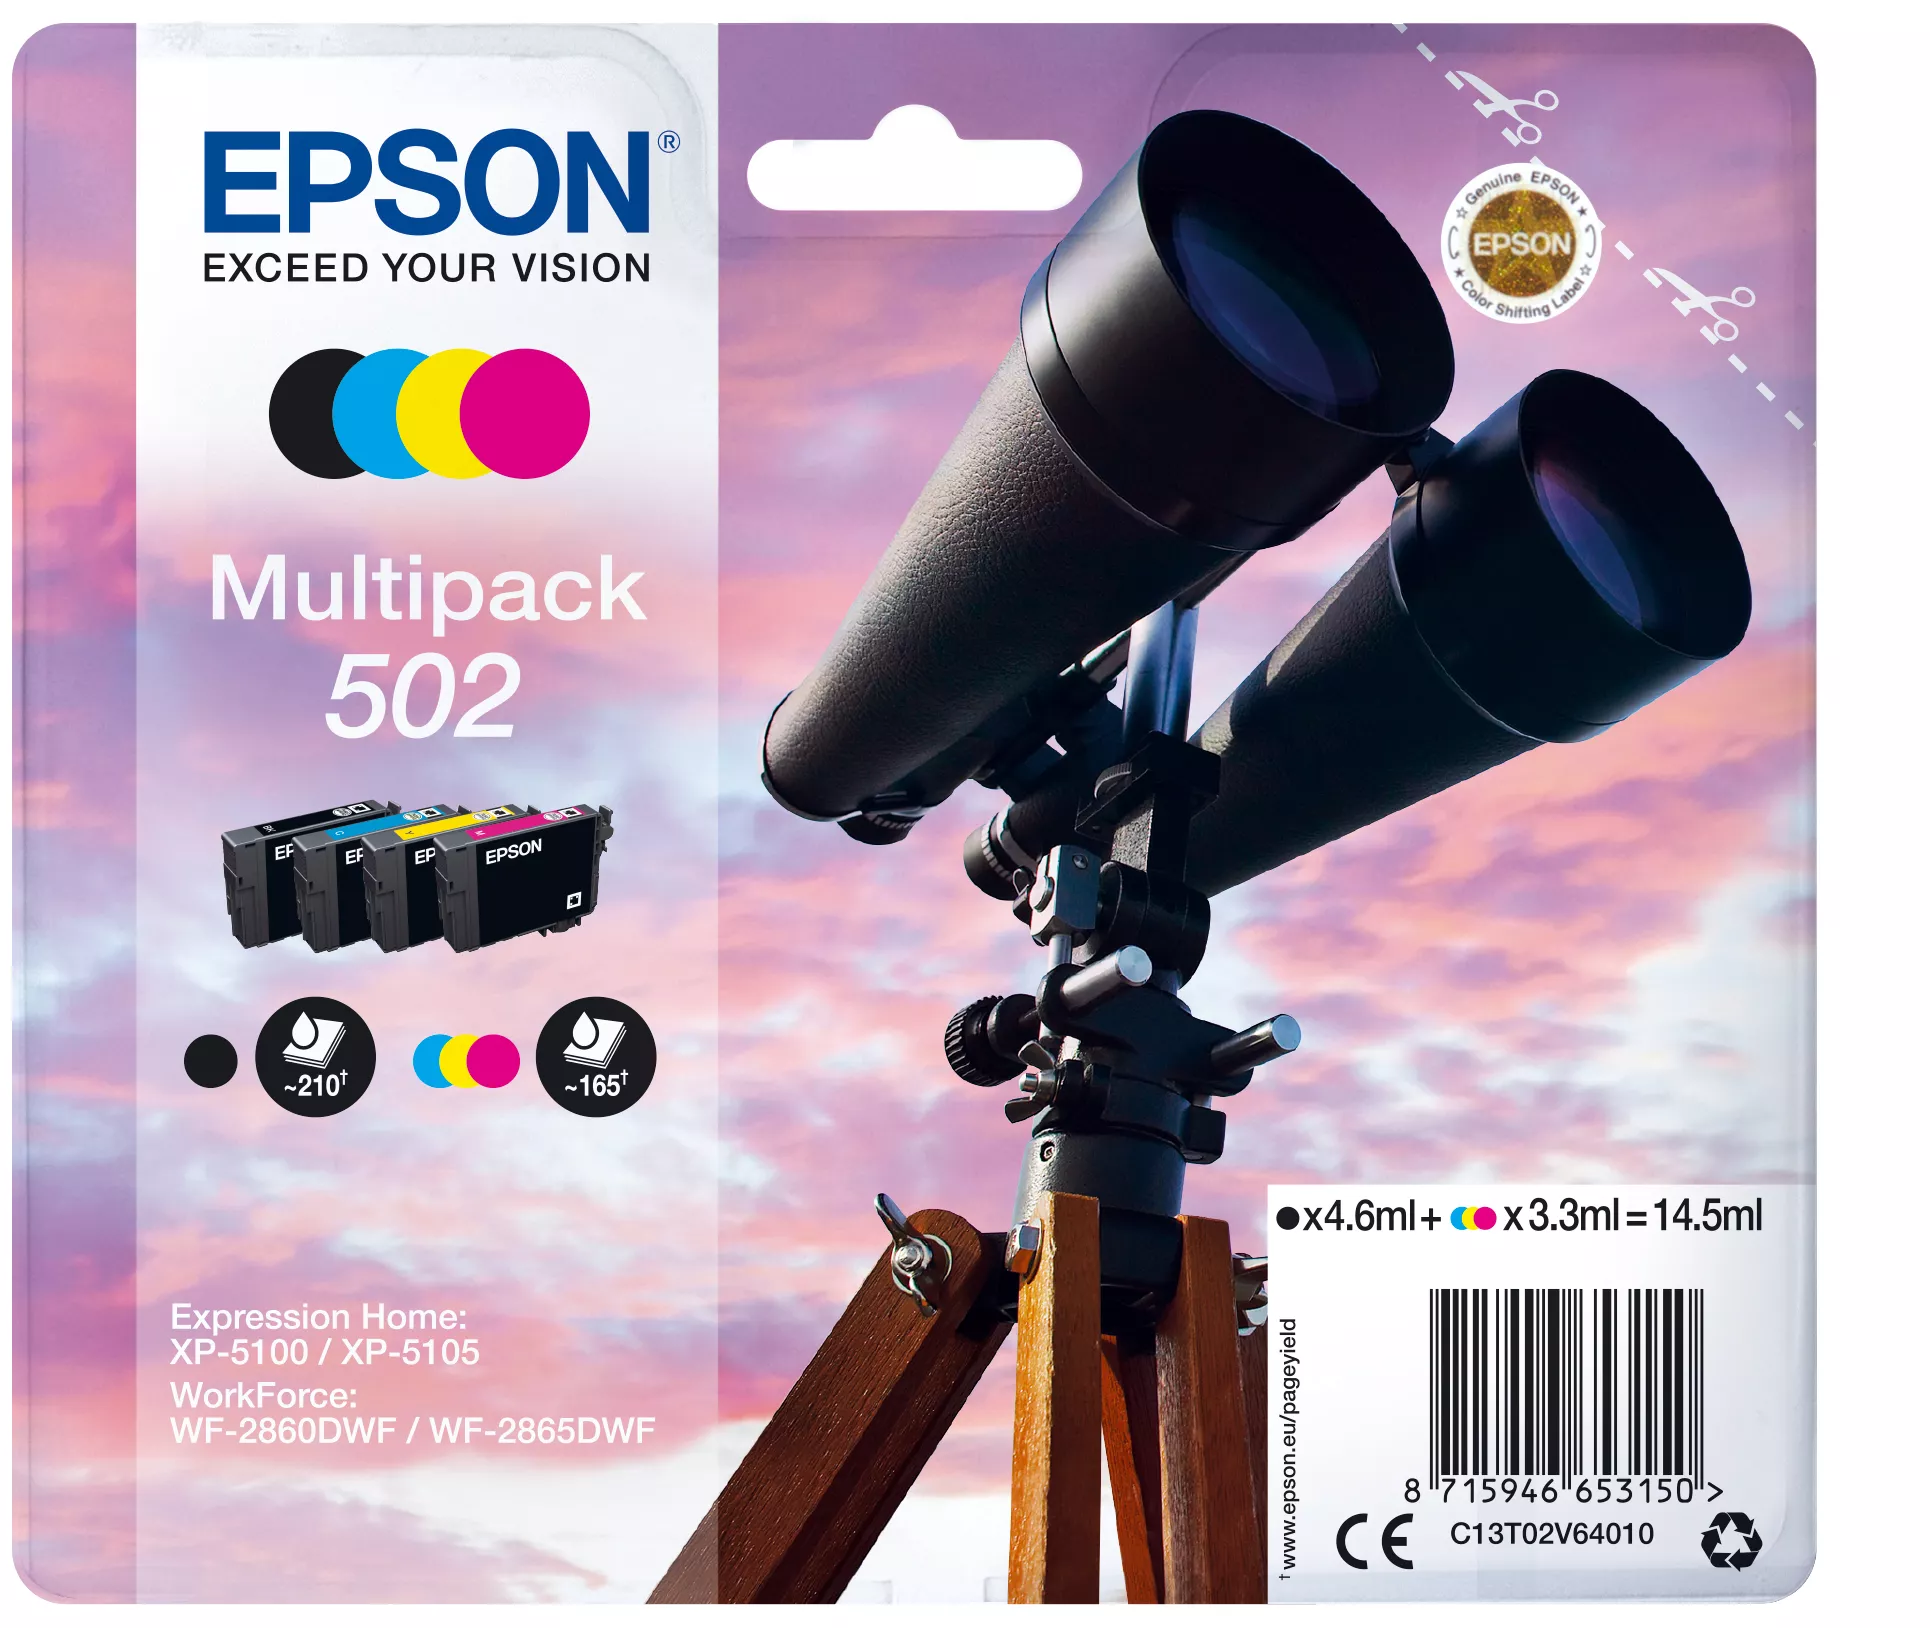 Achat EPSON Multipack 4-colours 502 Ink SEC au meilleur prix